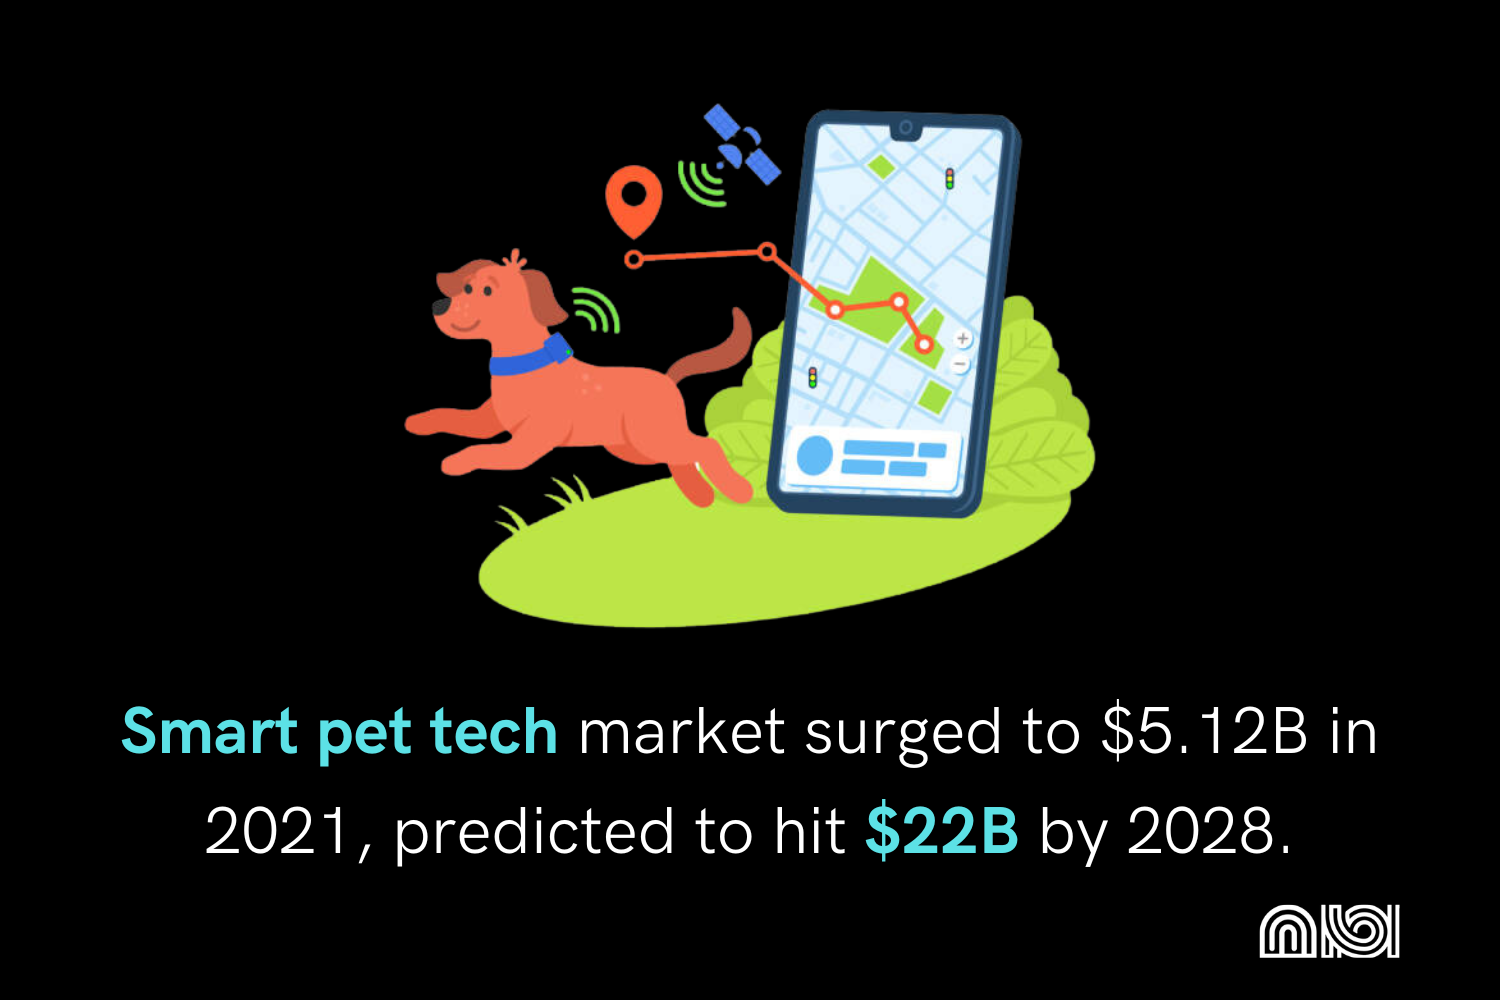 Smart pet tech market growth.